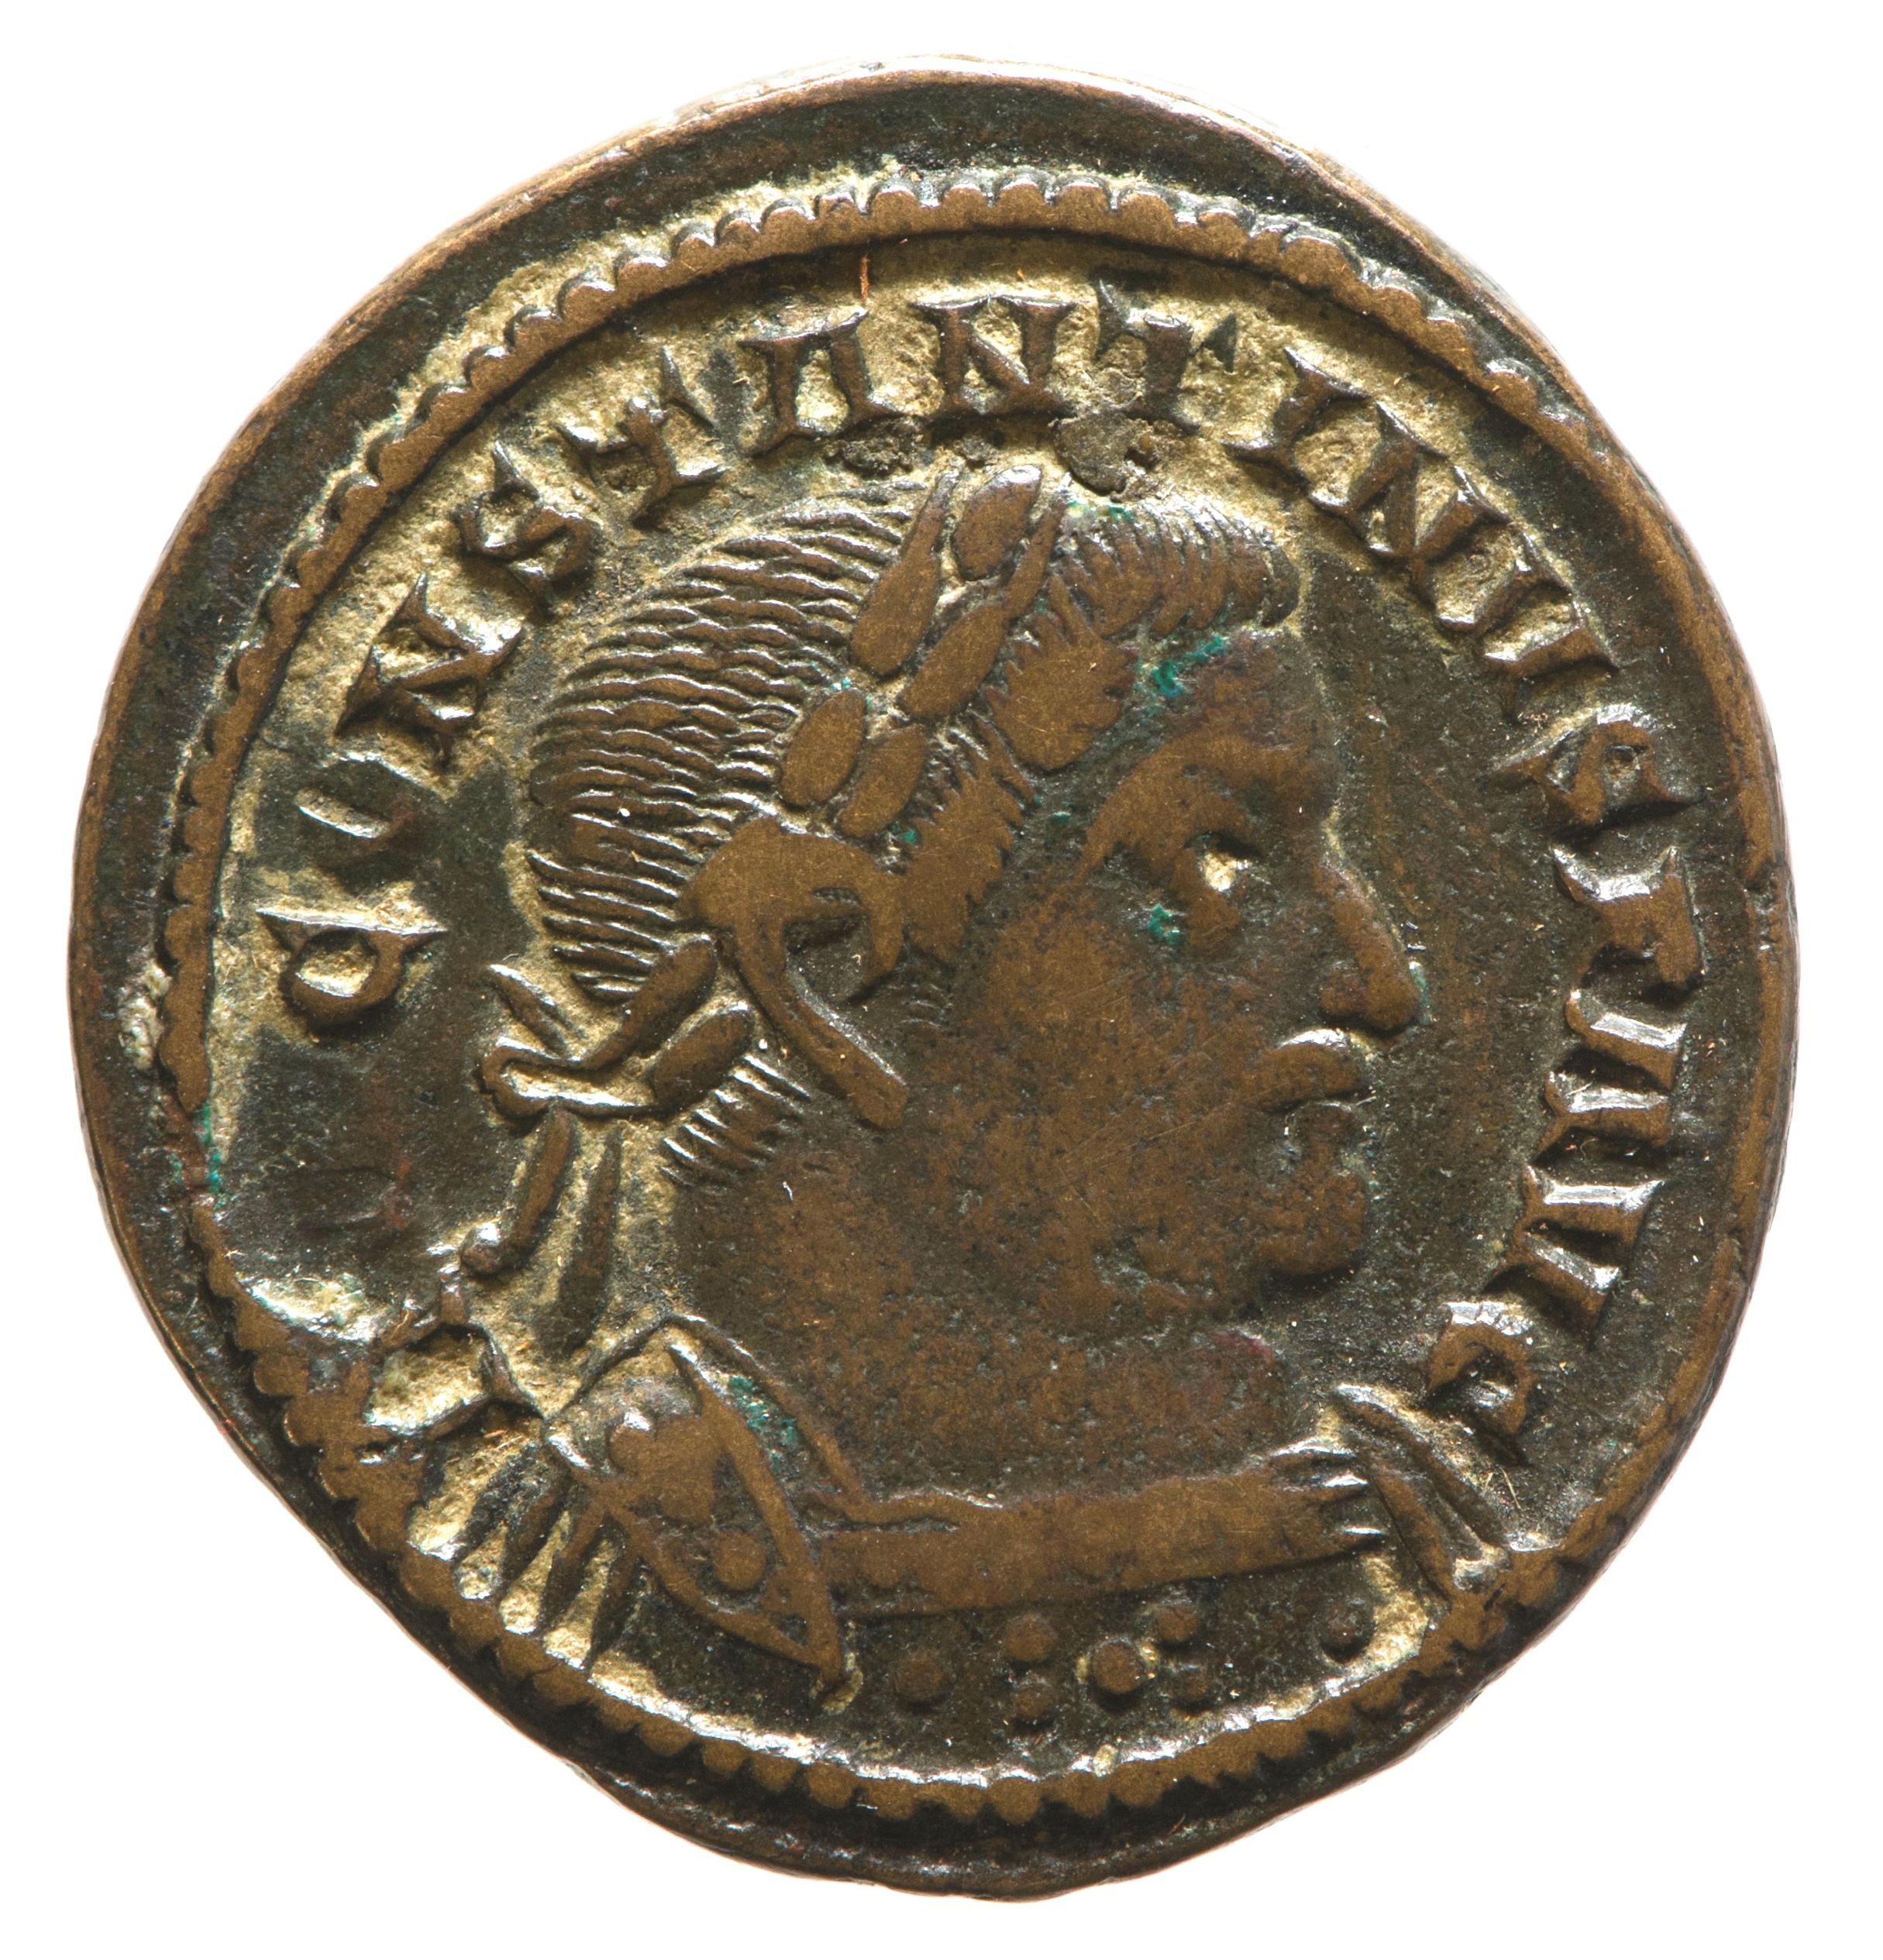 Nummus of Constantine (YORYM 2001 10313) obverse